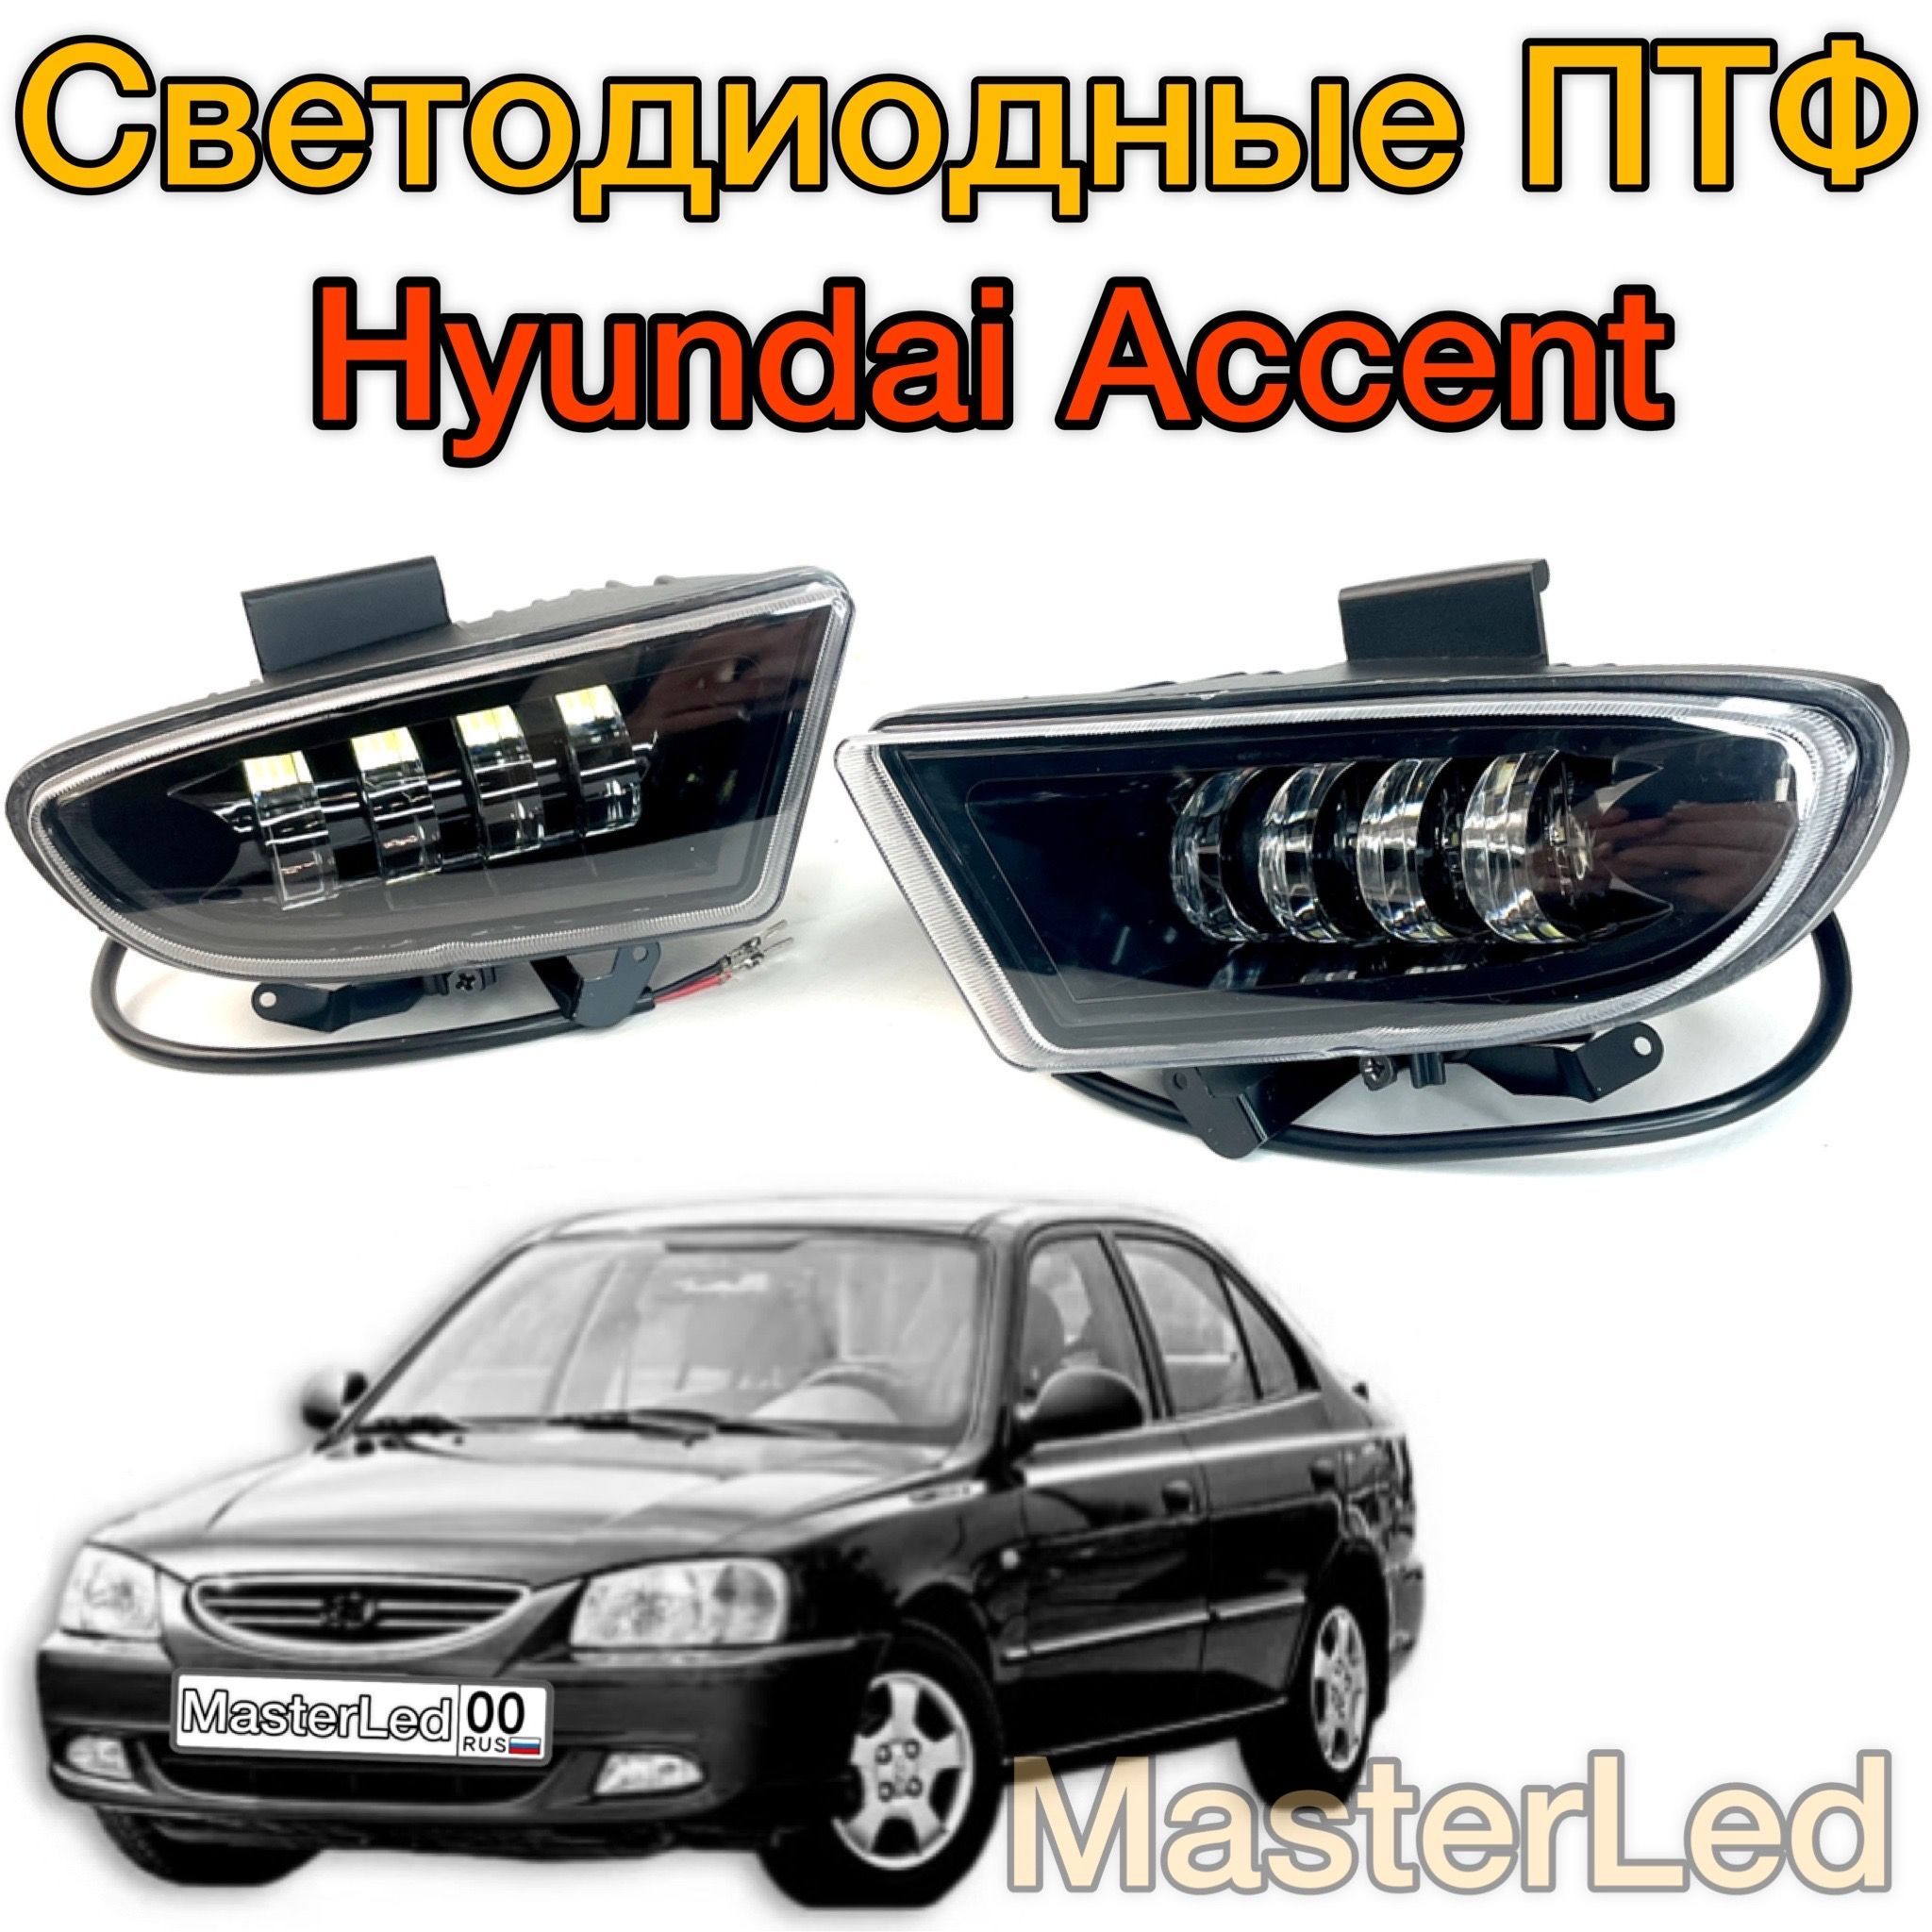 Светодиодные противотуманные фары для Hyundai Accent